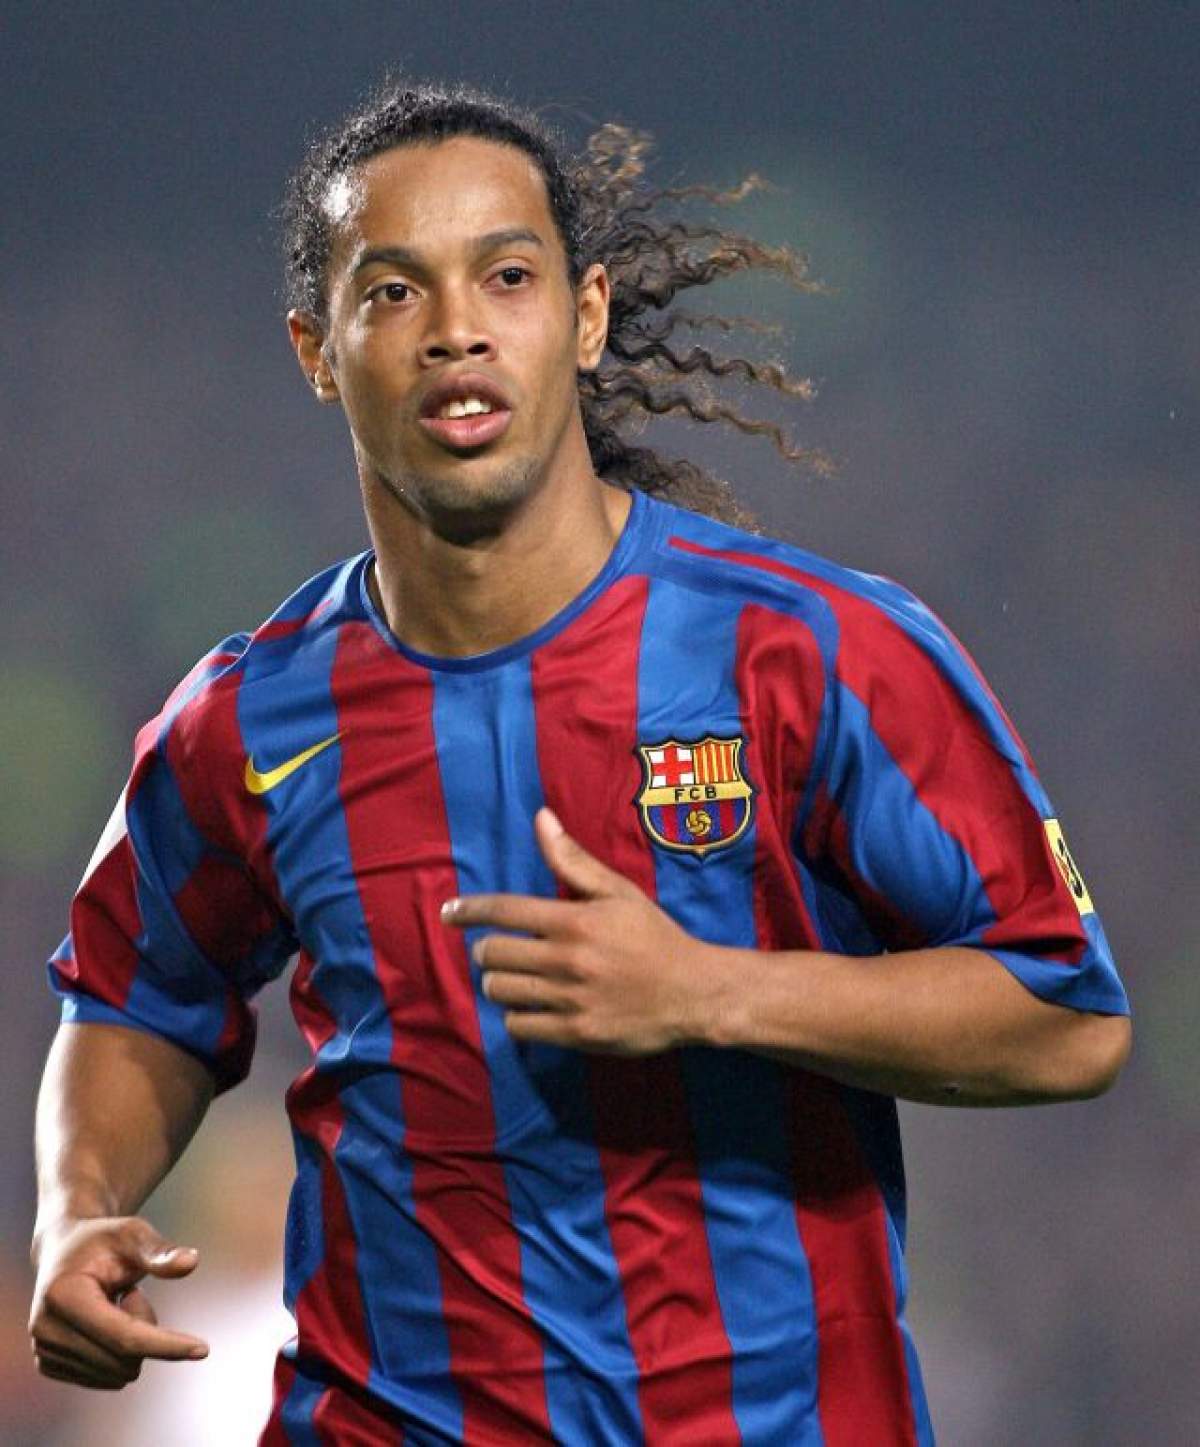 Răsturnare de situaţie! Ronaldinho, arestat în Paraguay, la scurt timp după ce a fost eliberat